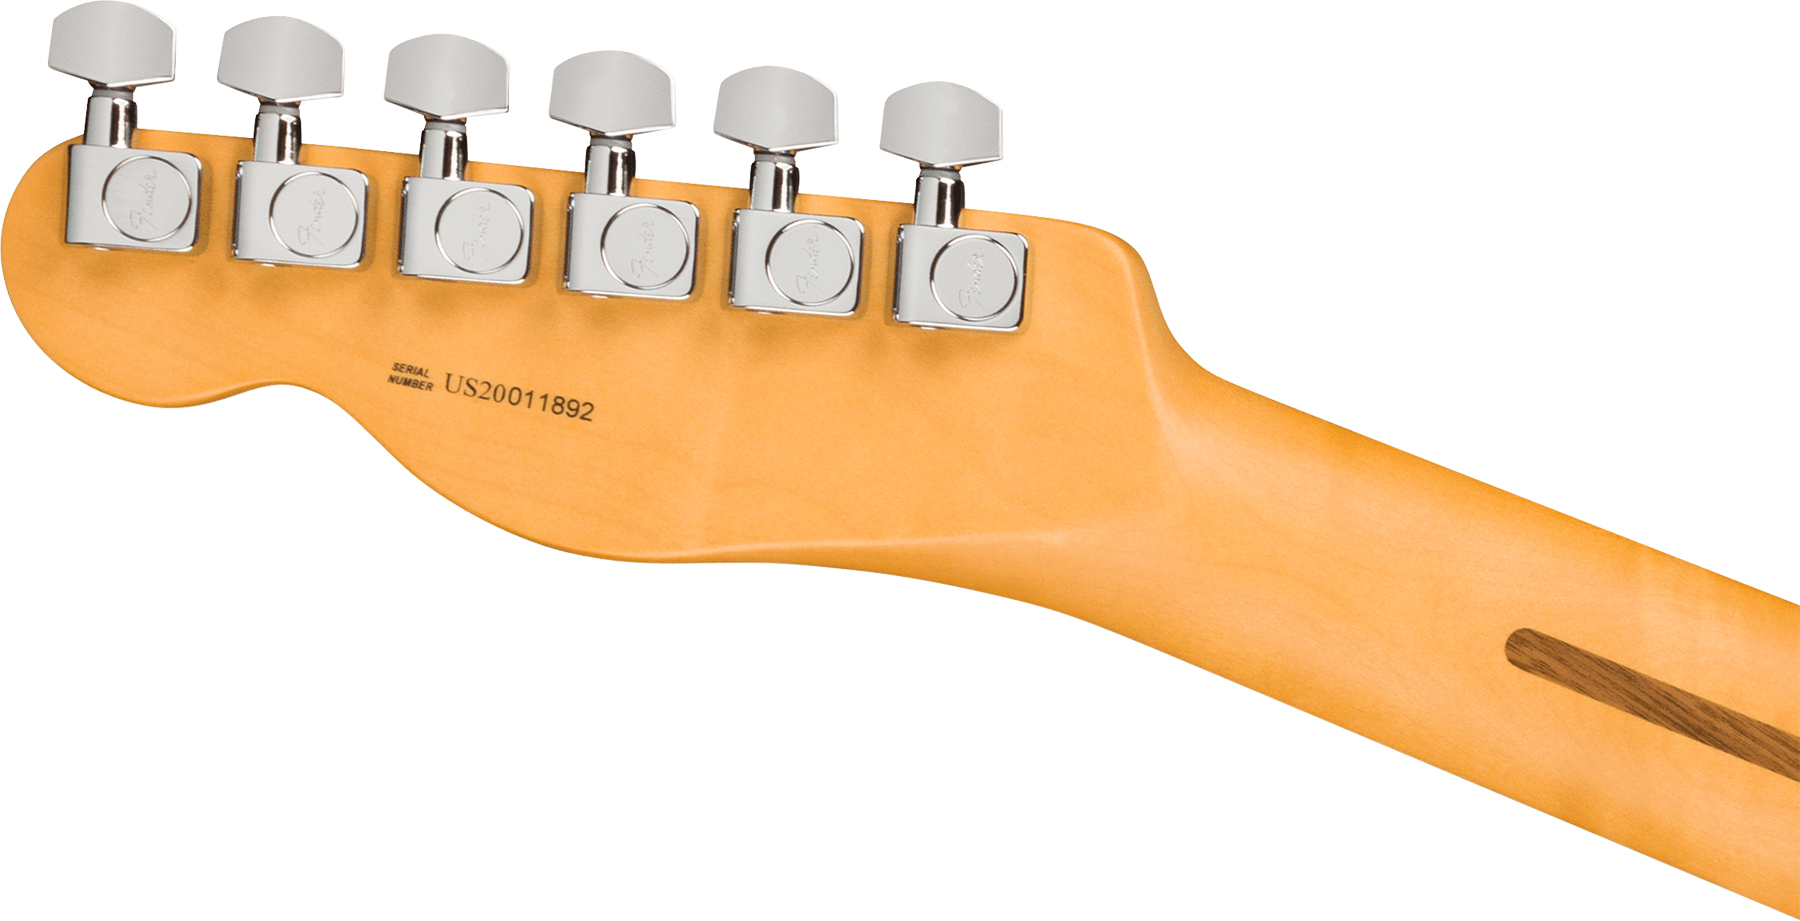 Fender Tele American Professional Ii Usa Mn - Black - Guitarra eléctrica con forma de tel - Variation 2